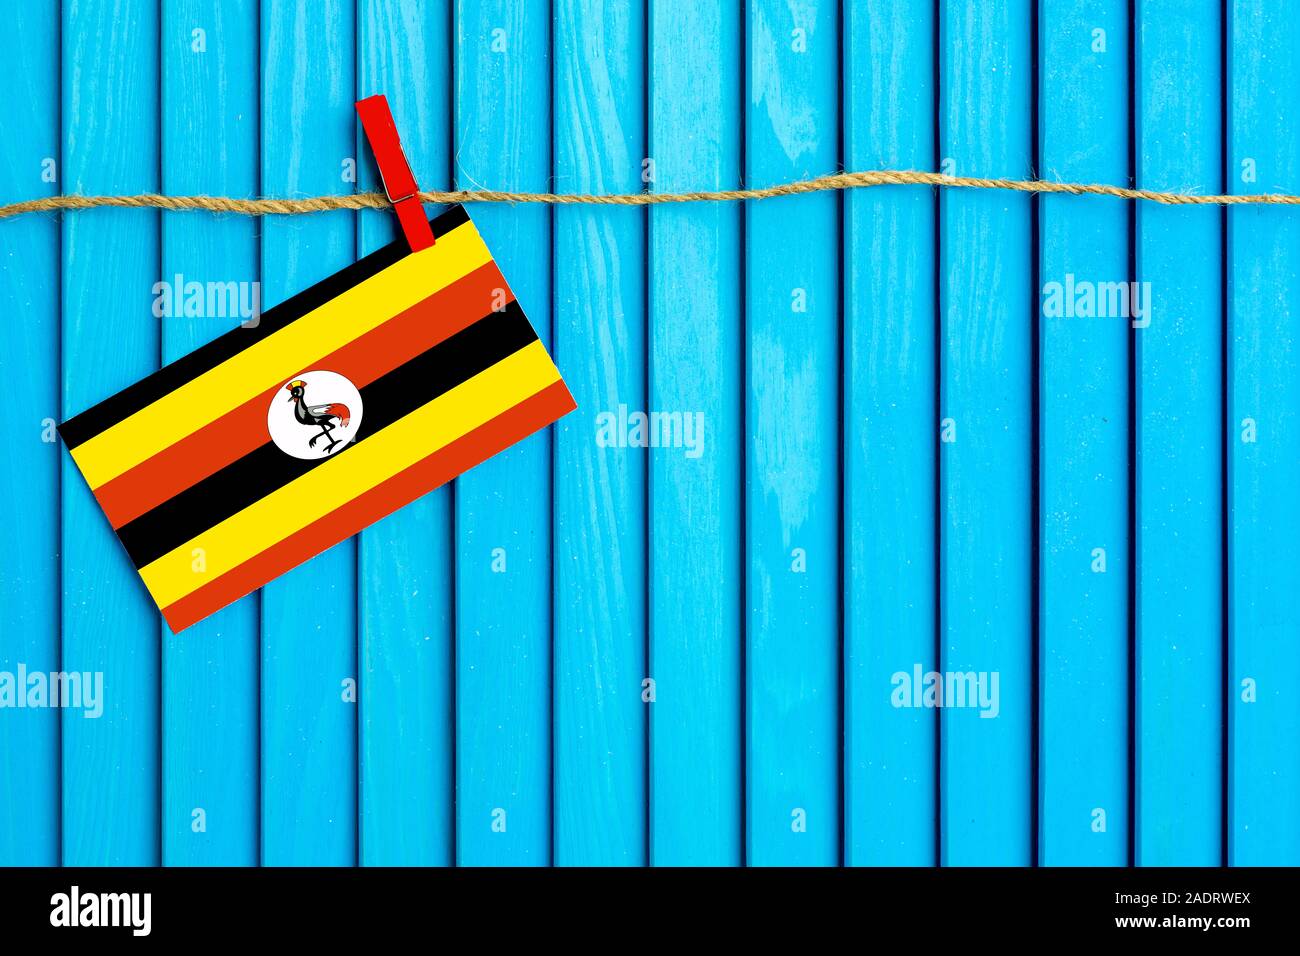 Flagge Uganda hängen auf Wäscheleine mit Holz Wäscheklammern auf aqua blau Holz- Hintergrund geklebt. Nationalen Tag Konzept. Stockfoto